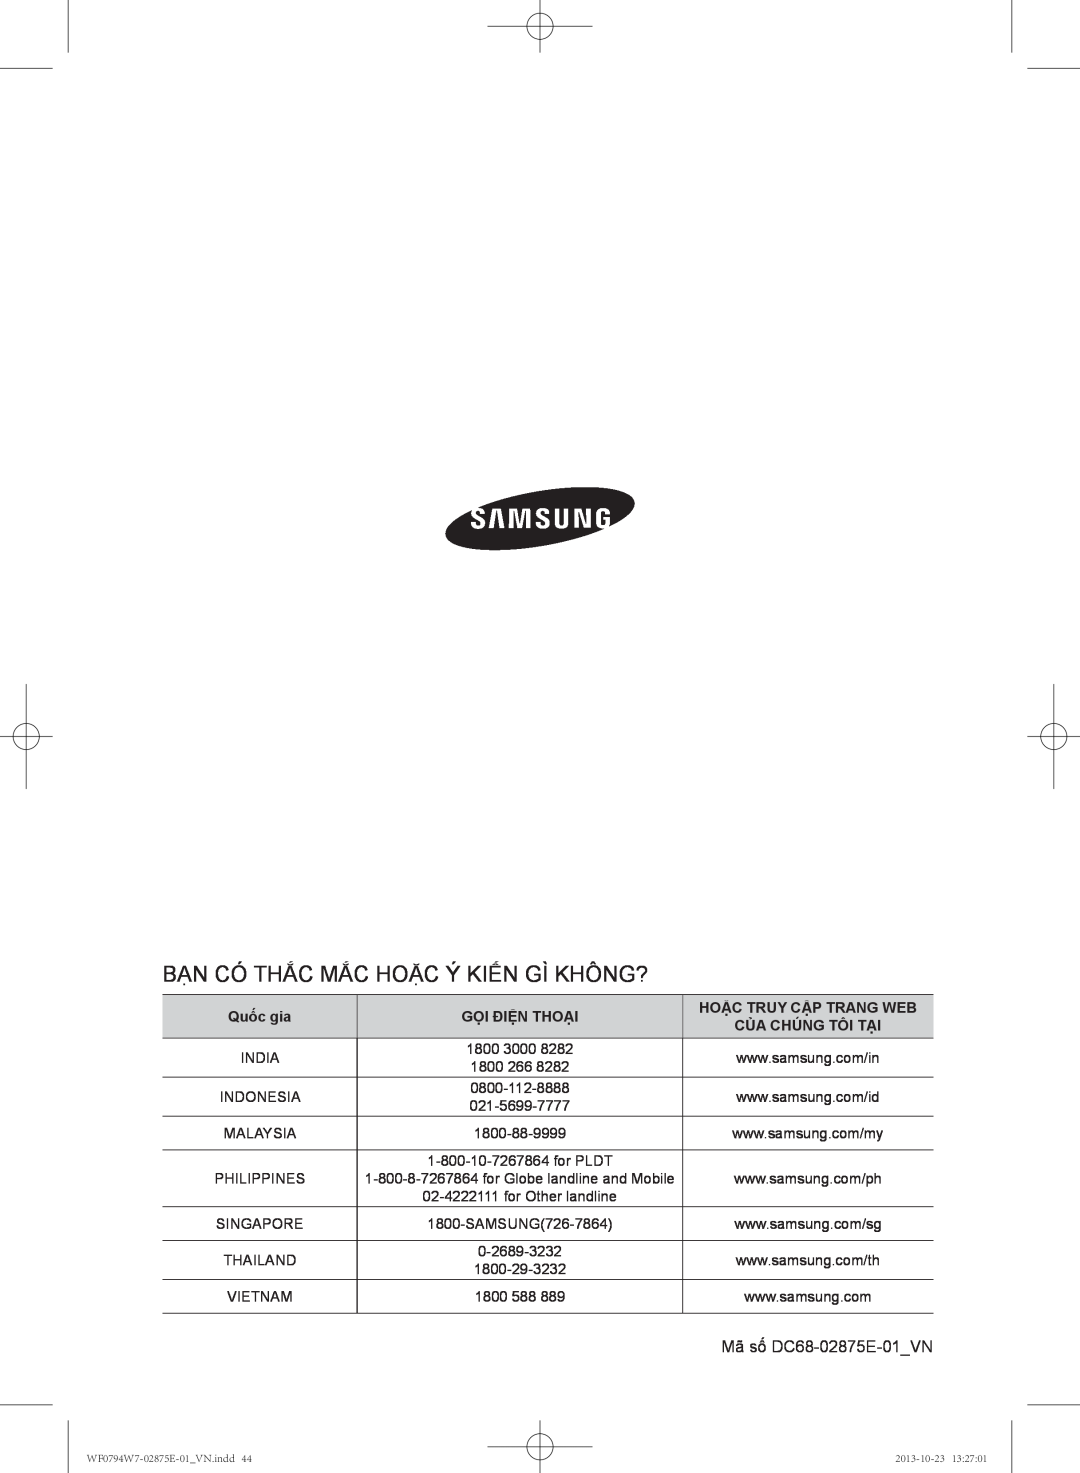 Samsung WF0794W7E9/XSV Bạn Có Thắc Mắc Hoặc Ý Kiến Gì Không?, Quốc gia, Gọi Điện Thoại, Hoặc Truy Cập Trang Web, Malaysia 